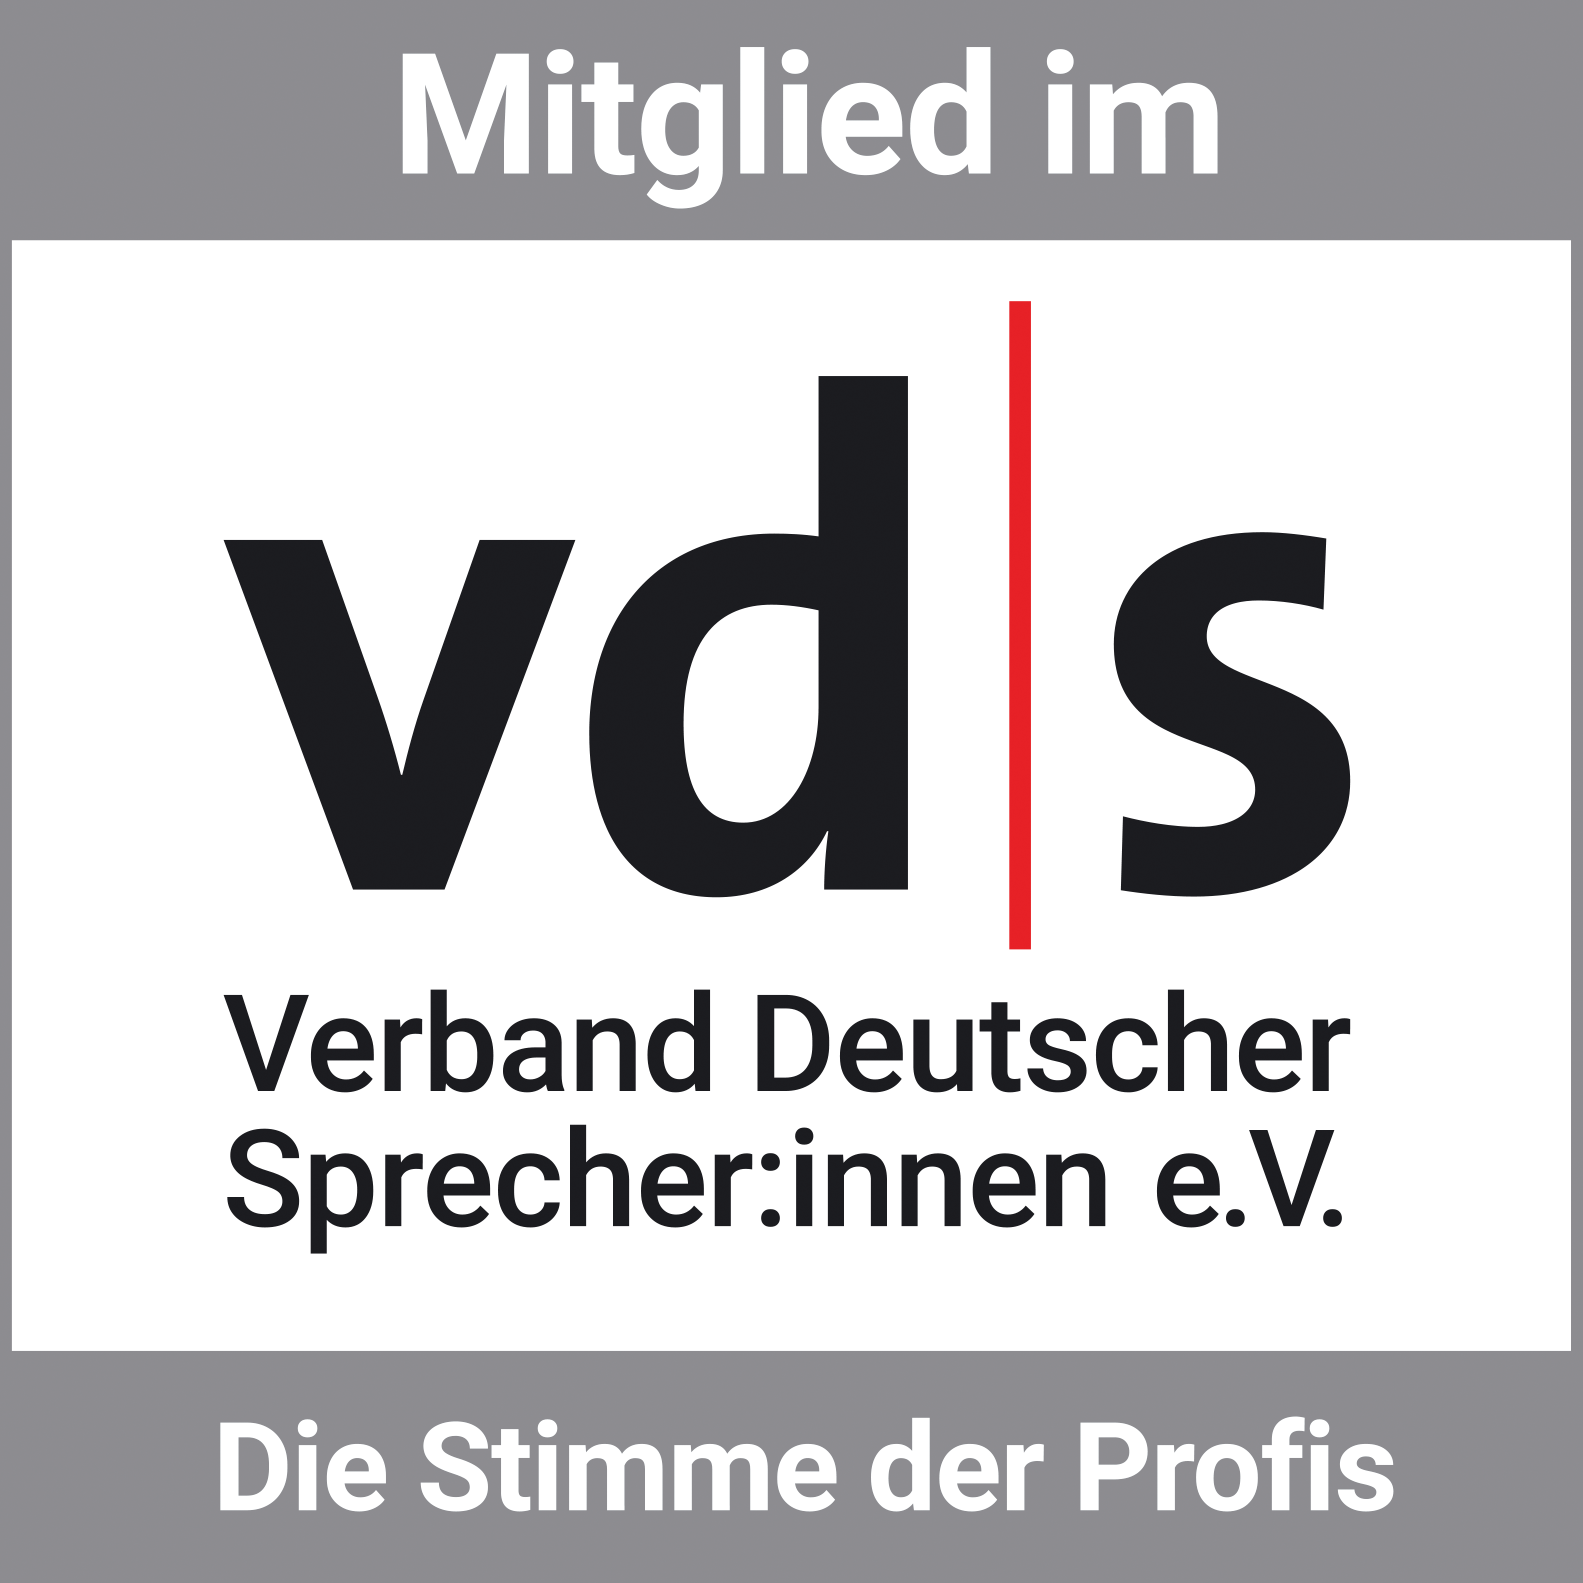 Verband Deutscher Sprecher, Verband Deutscher Sprecherinnen, VDS